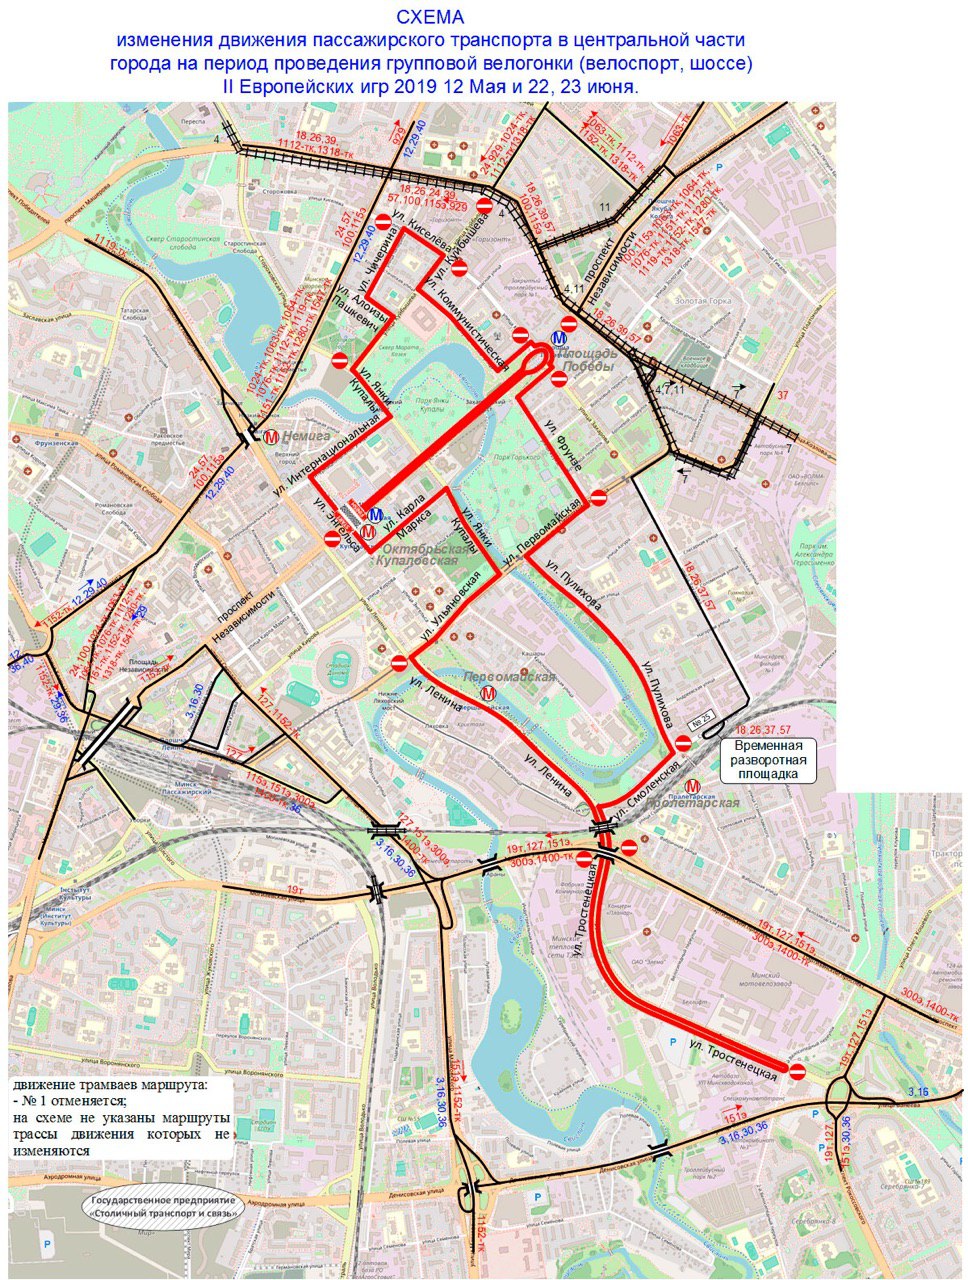 Сегодня и завтра в Минске перекрывают улицы ради велосипедистов